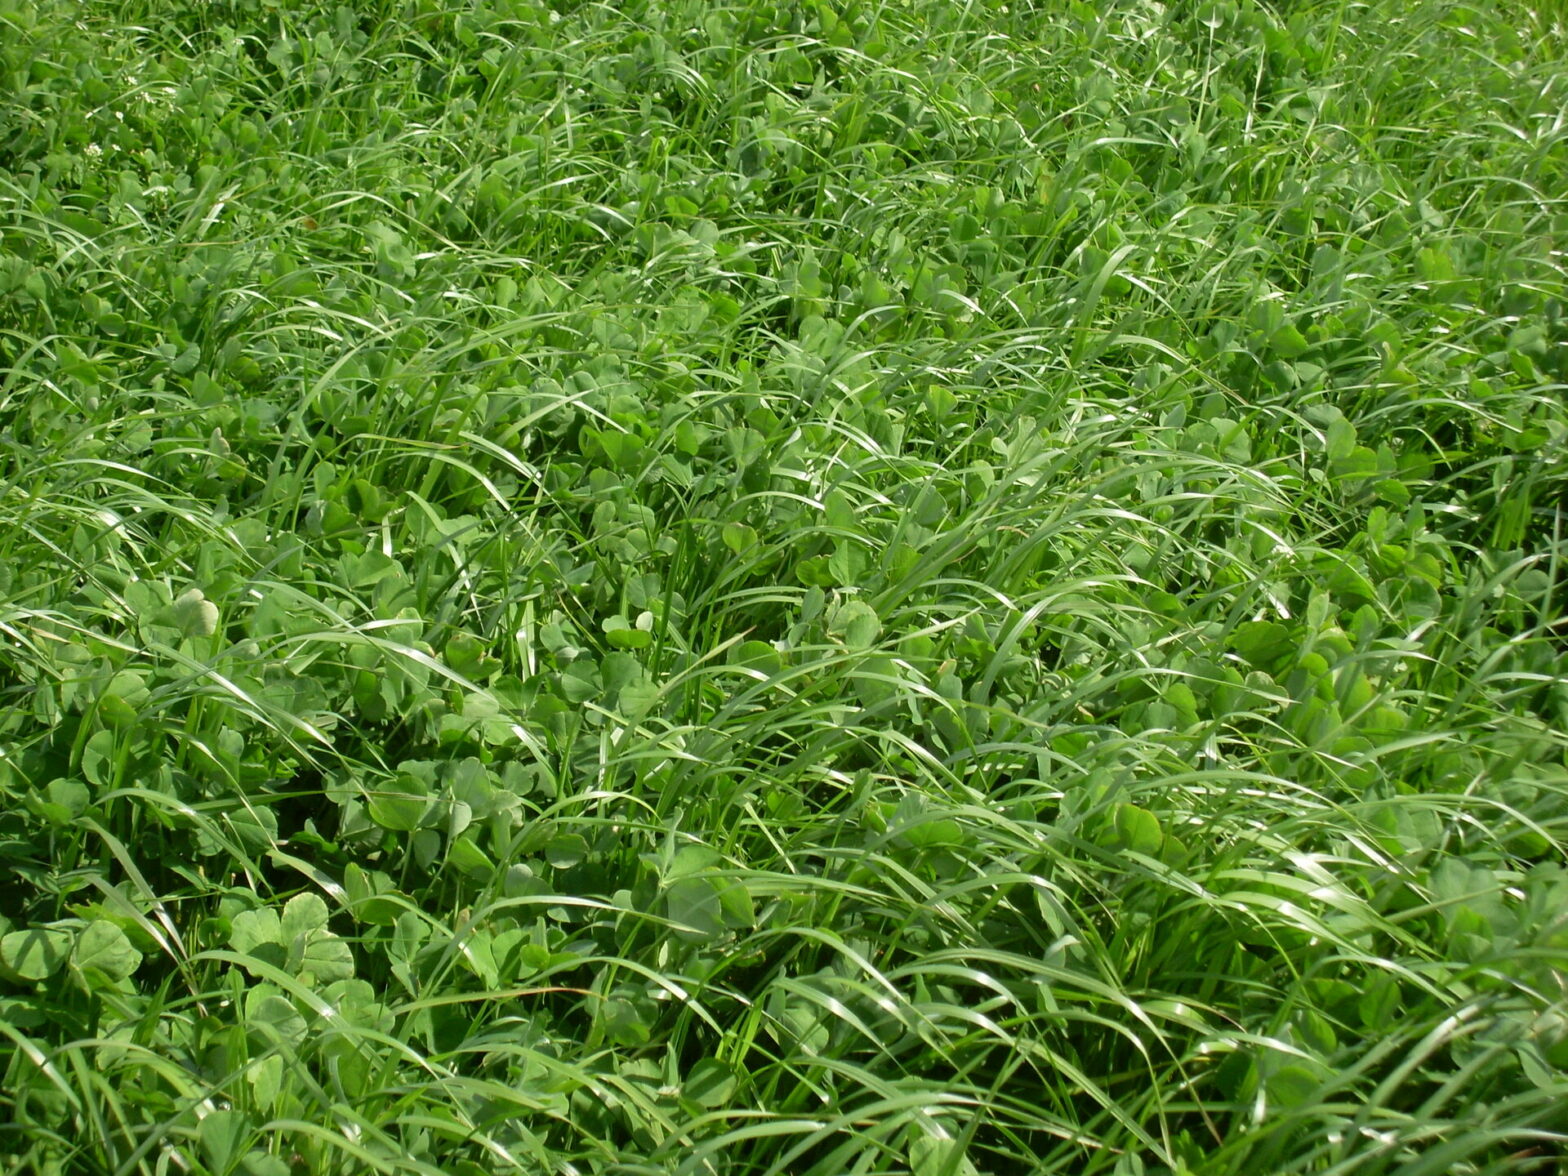 Sursemis de trèfle dans du raygrass en Vendée.